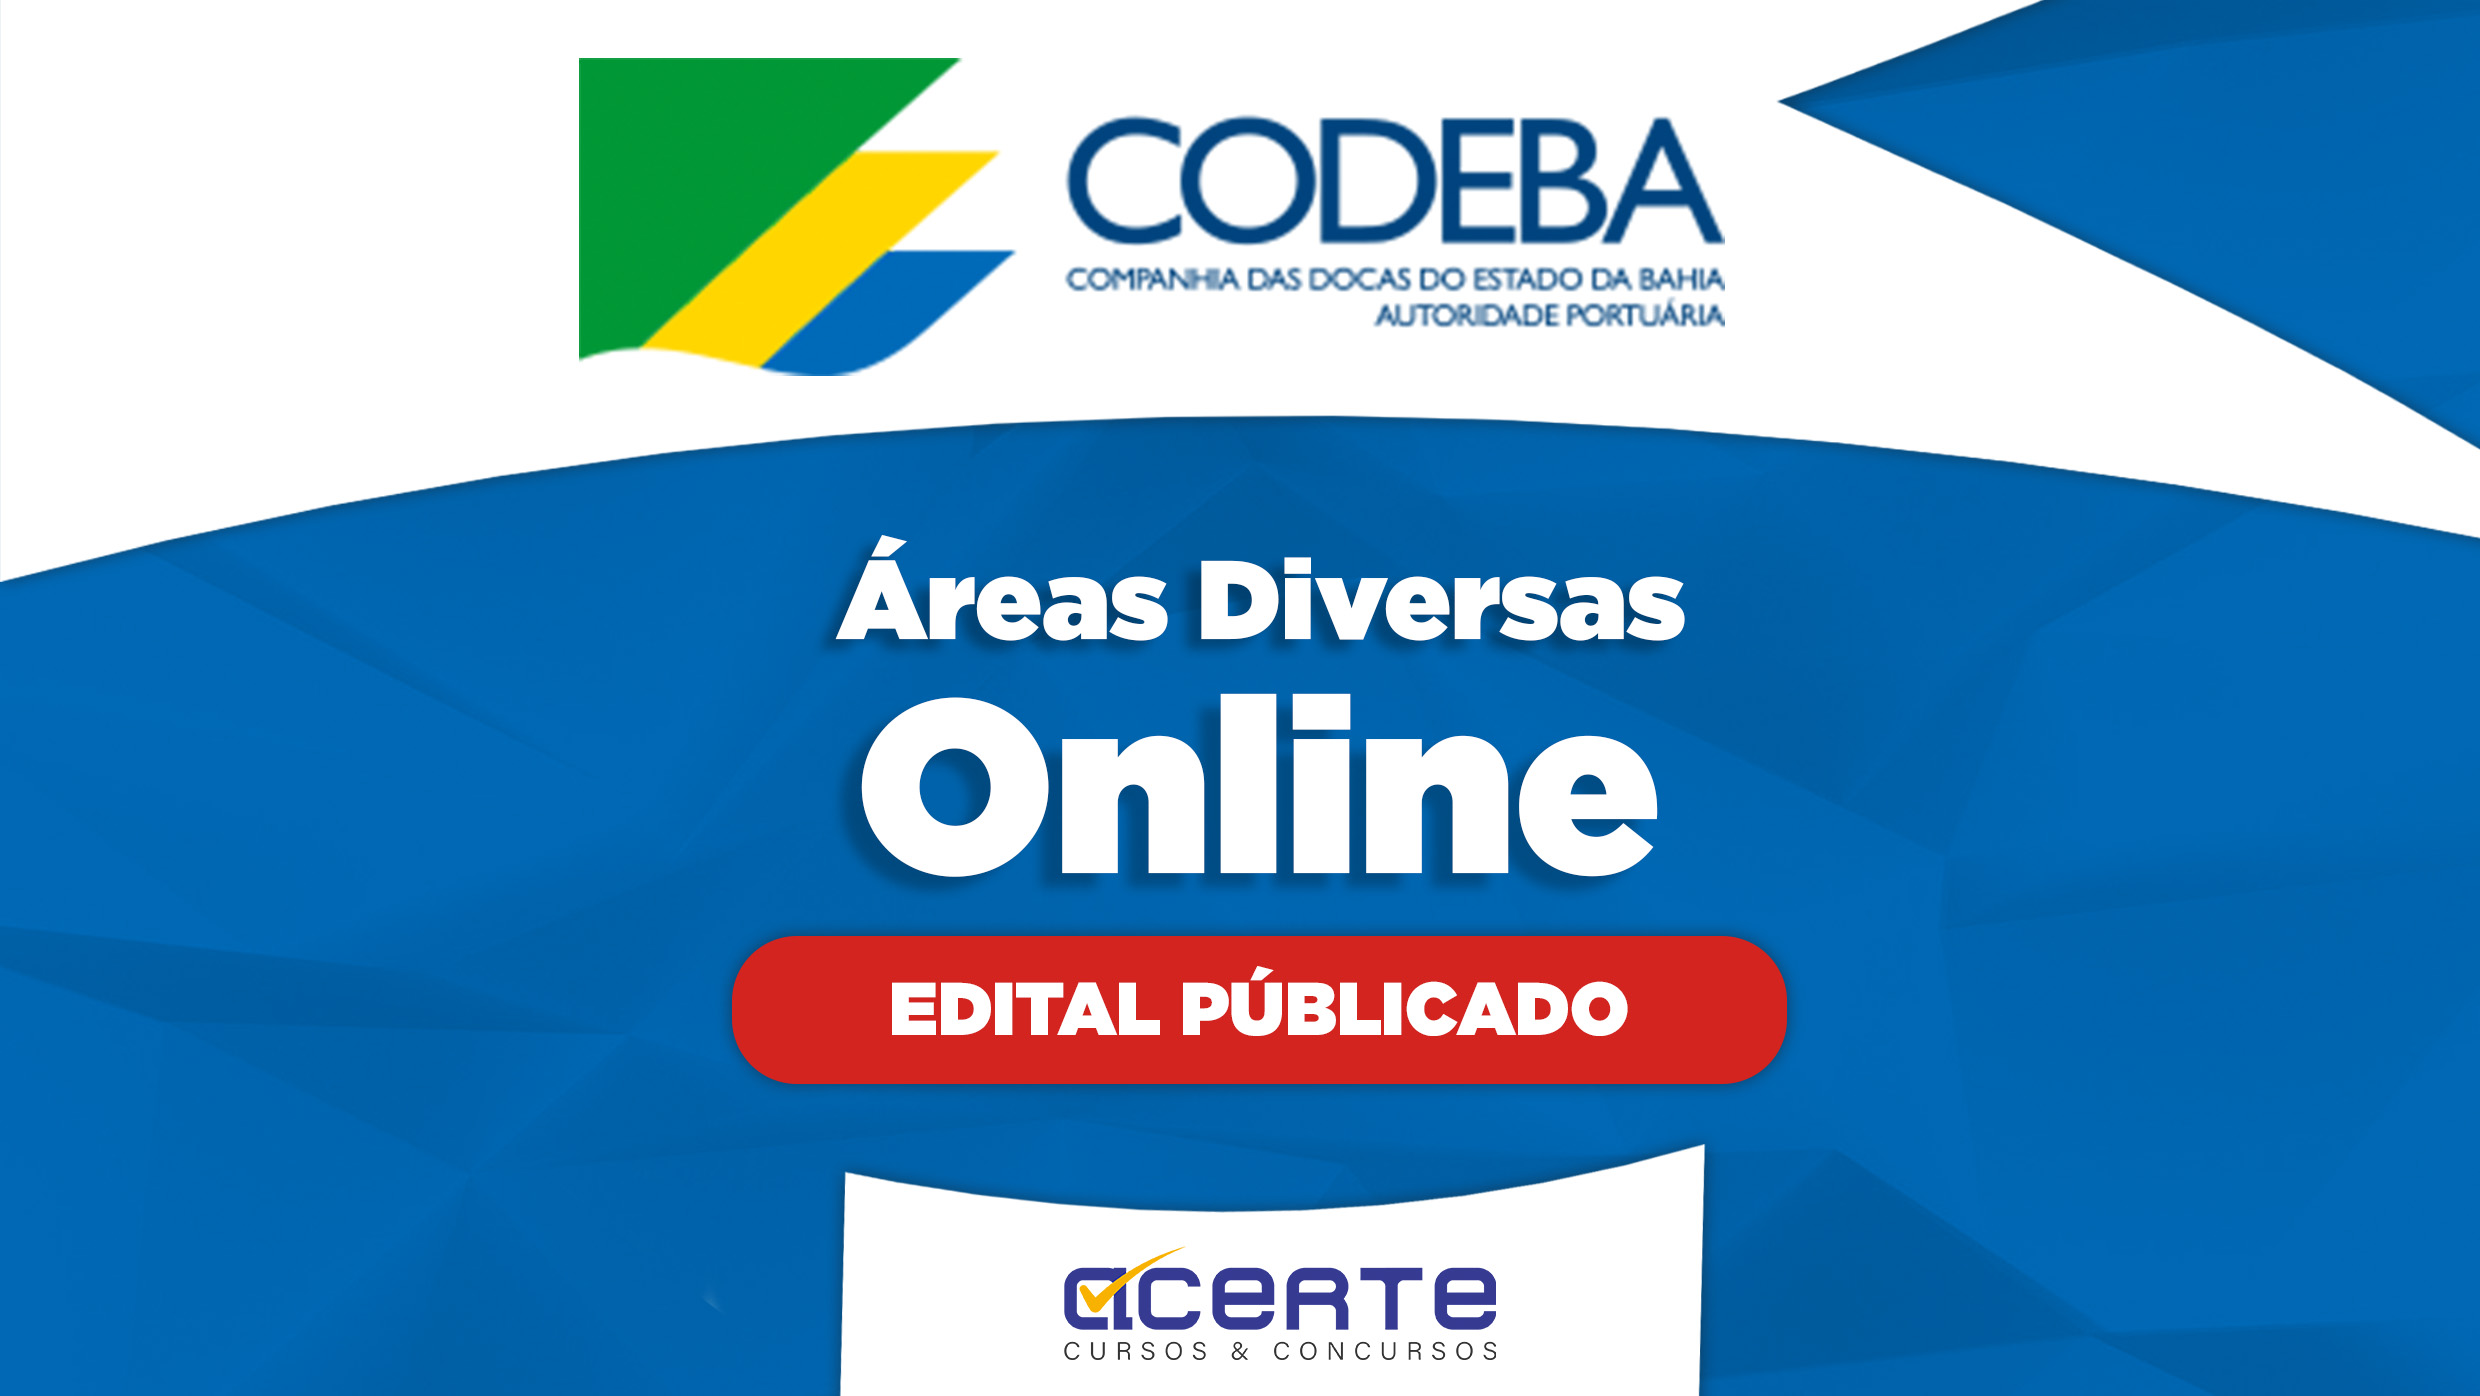 CODEBA - Áreas Diversas - Online - Edital Publicado